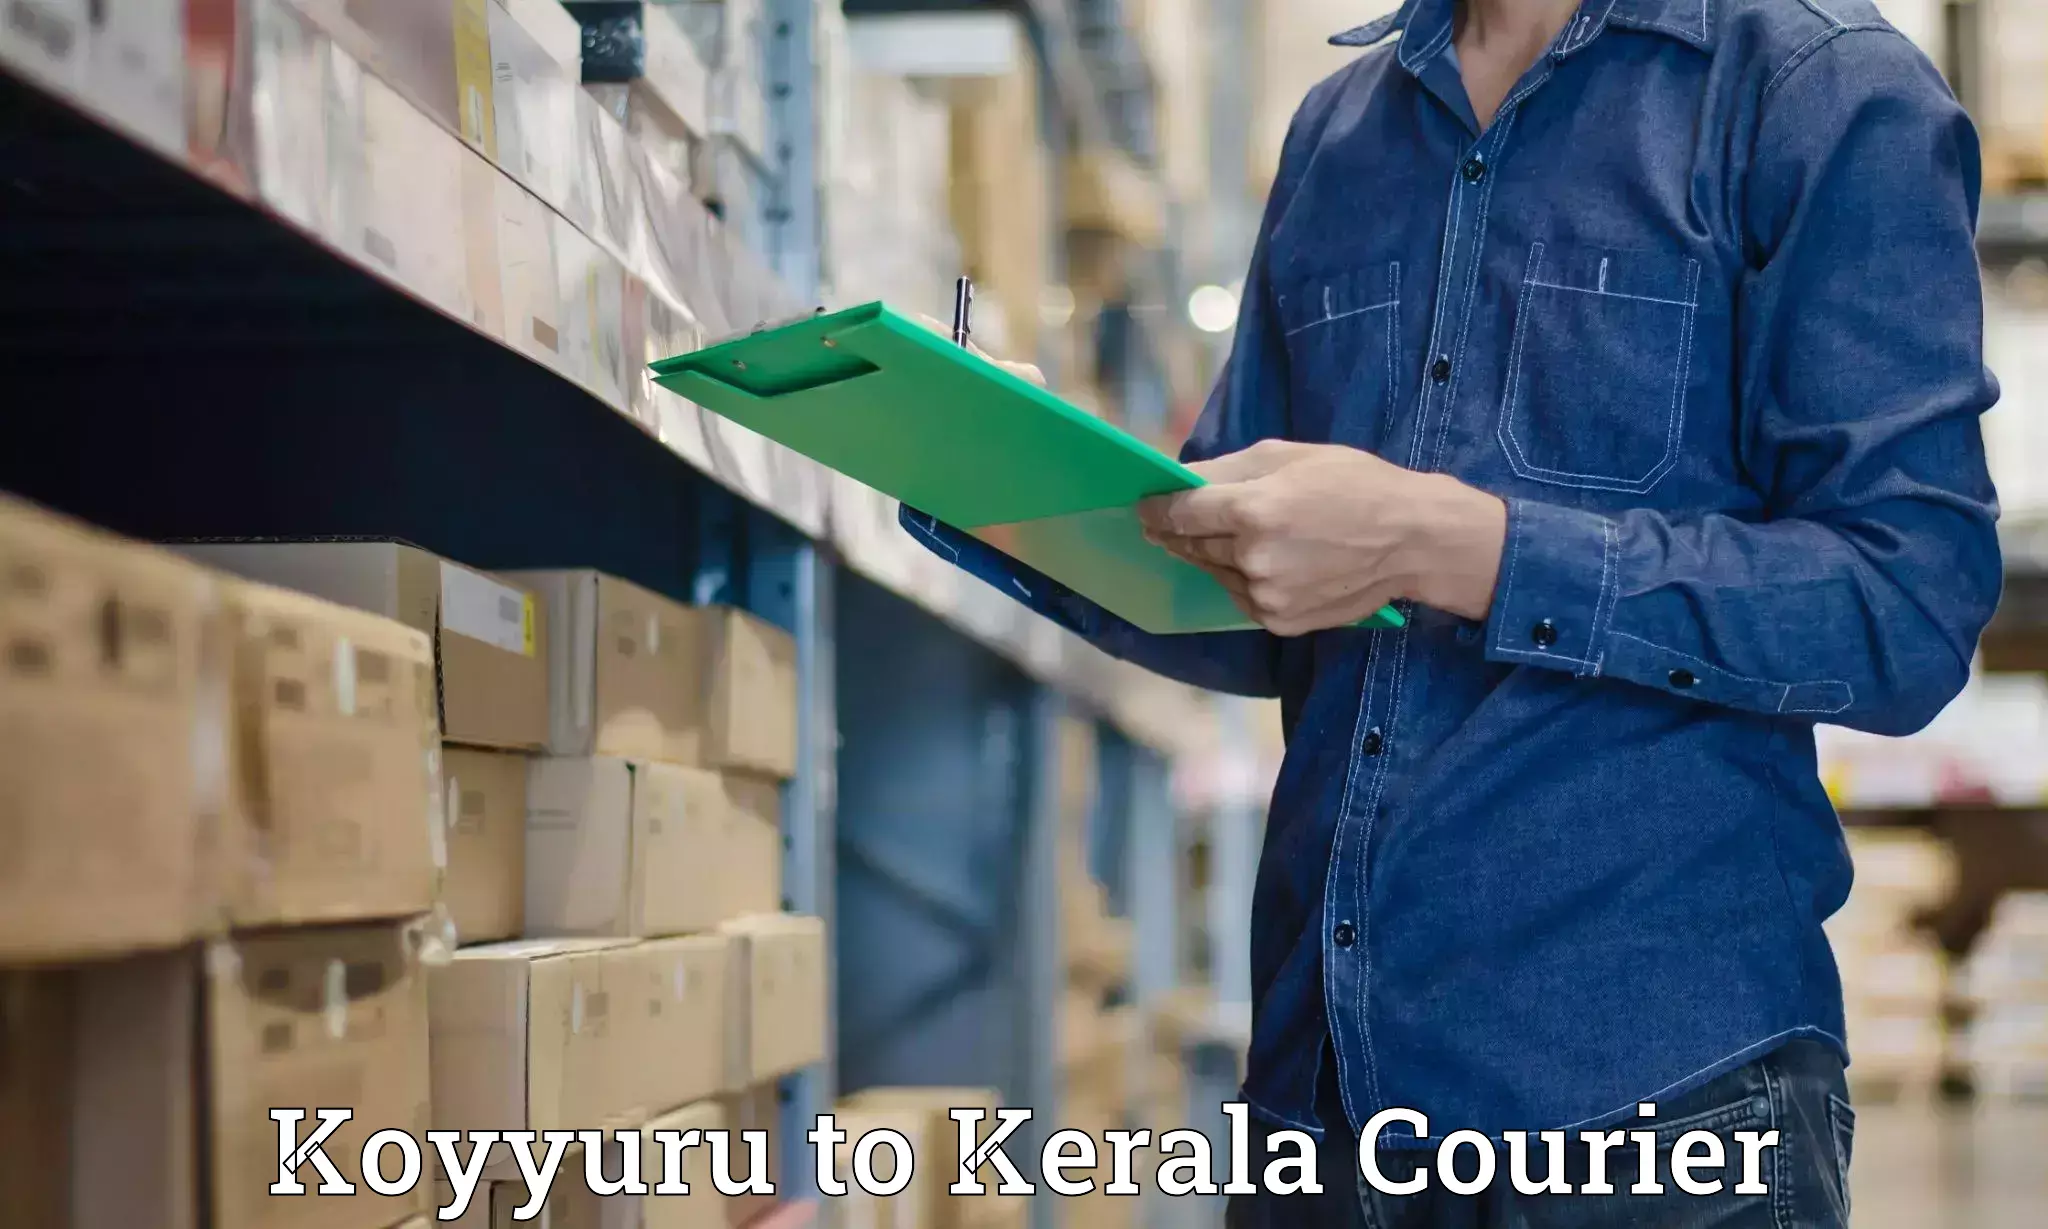 Expedited shipping solutions Koyyuru to IIIT Kottayam